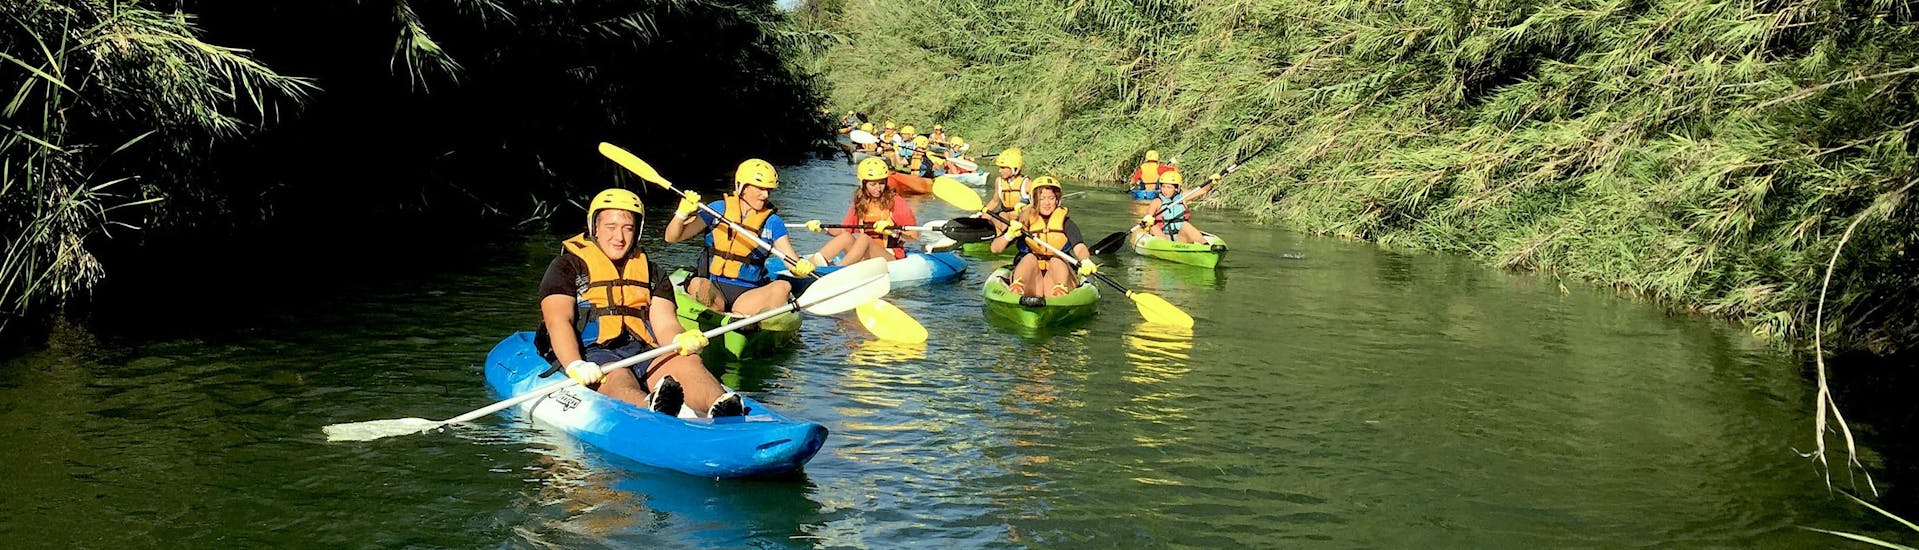 Kayak para Familias & Amigos - Río Turia.